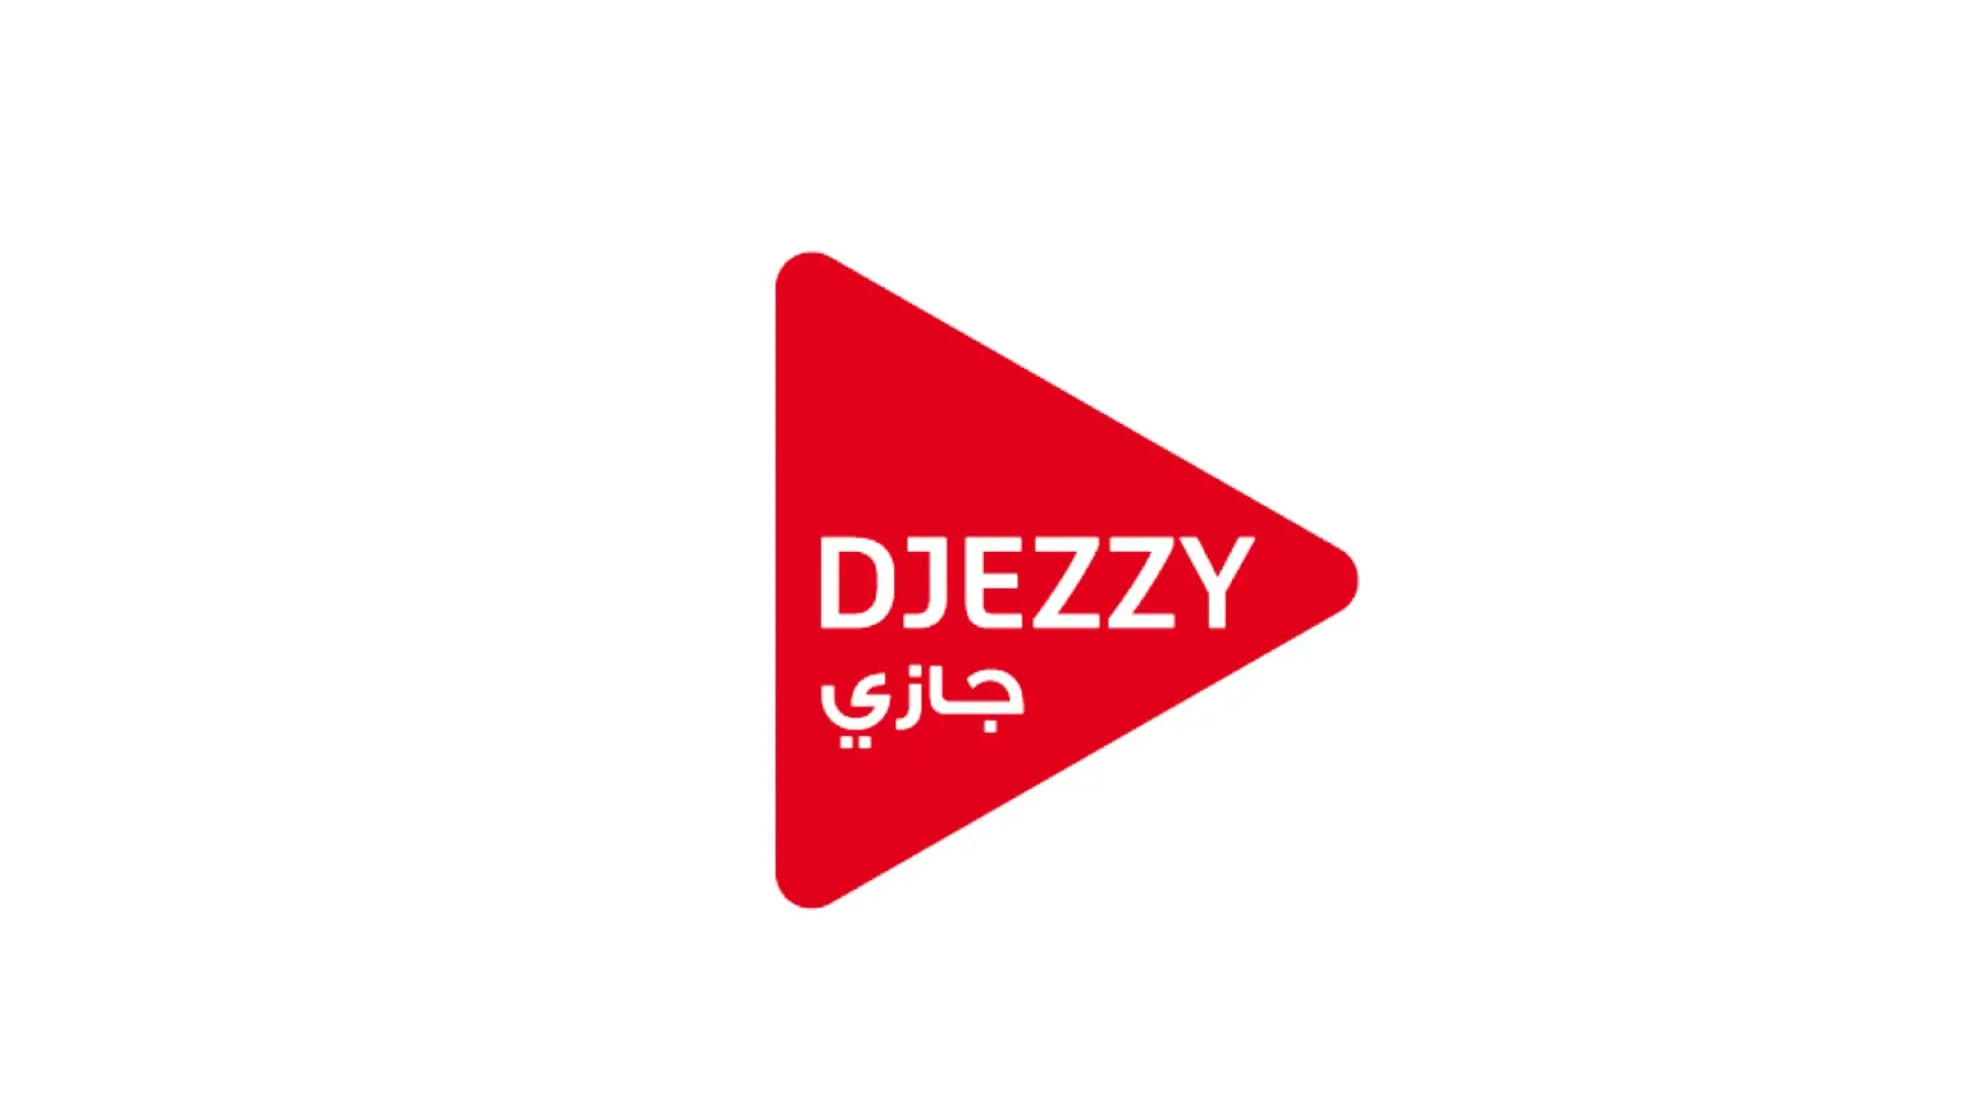 Djezzy 100 DZD Mobile Top-up DZ [USD 1.36]